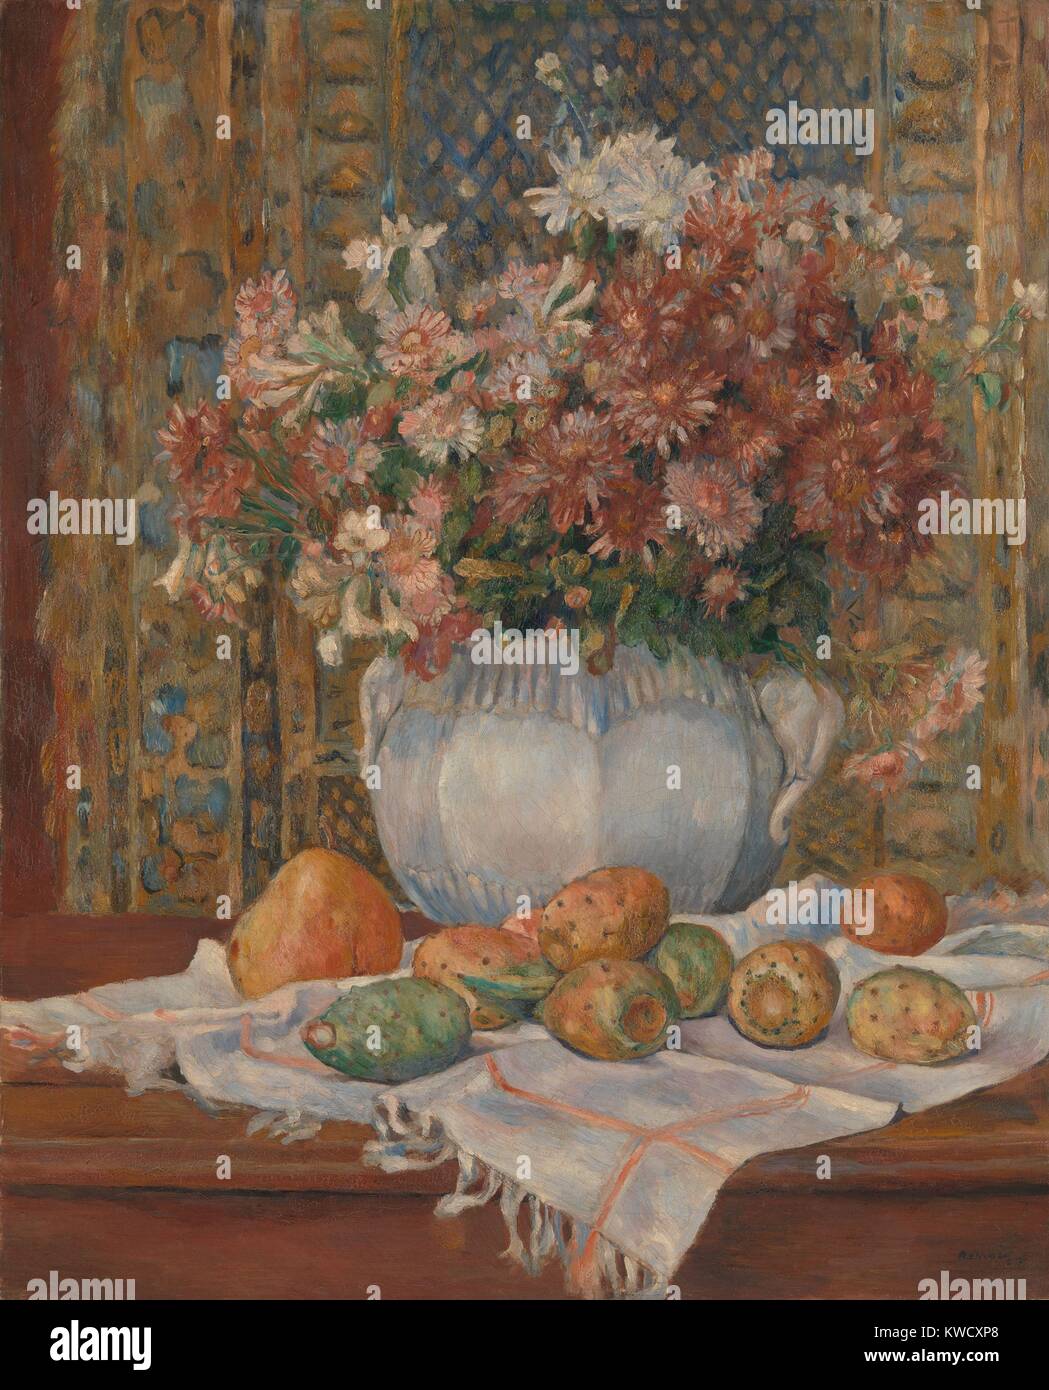 Bodegón con flores y chumberas, por Auguste Renoir, 1885, pintura impresionista francesa. Renoir pintó este con colores suaves y sutiles contrastes tonales (BSLOC 2017 3 86) Foto de stock